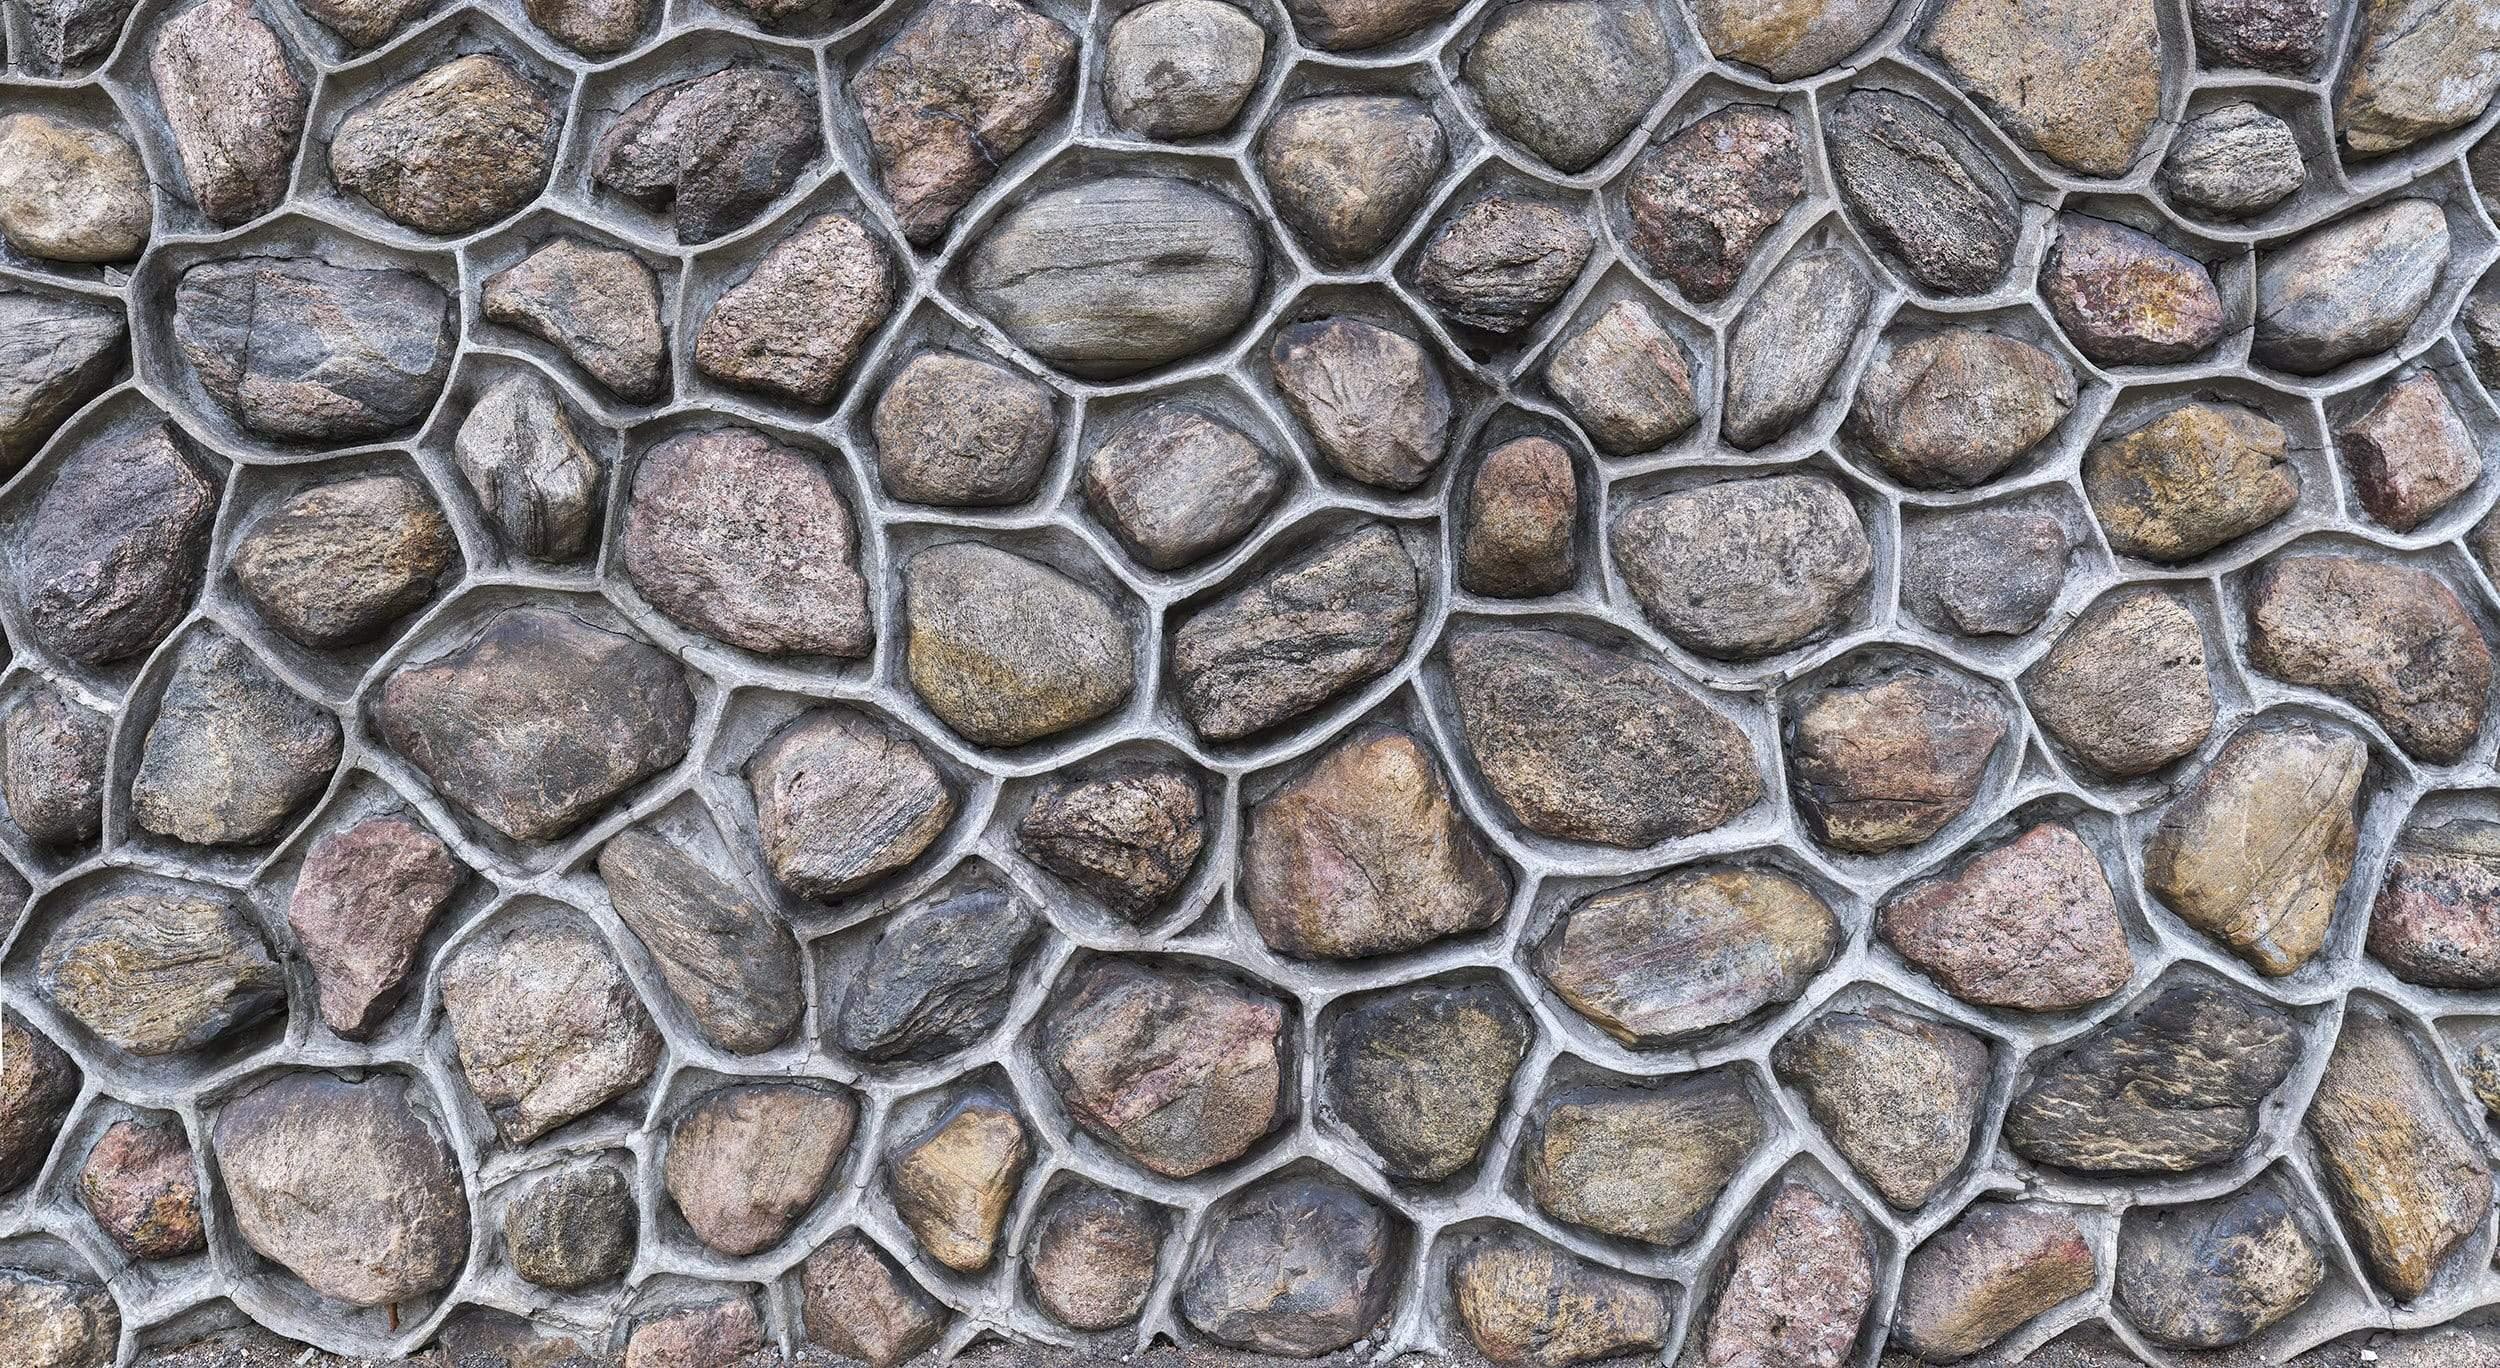 Large Rock Wall: GigaPixel Image